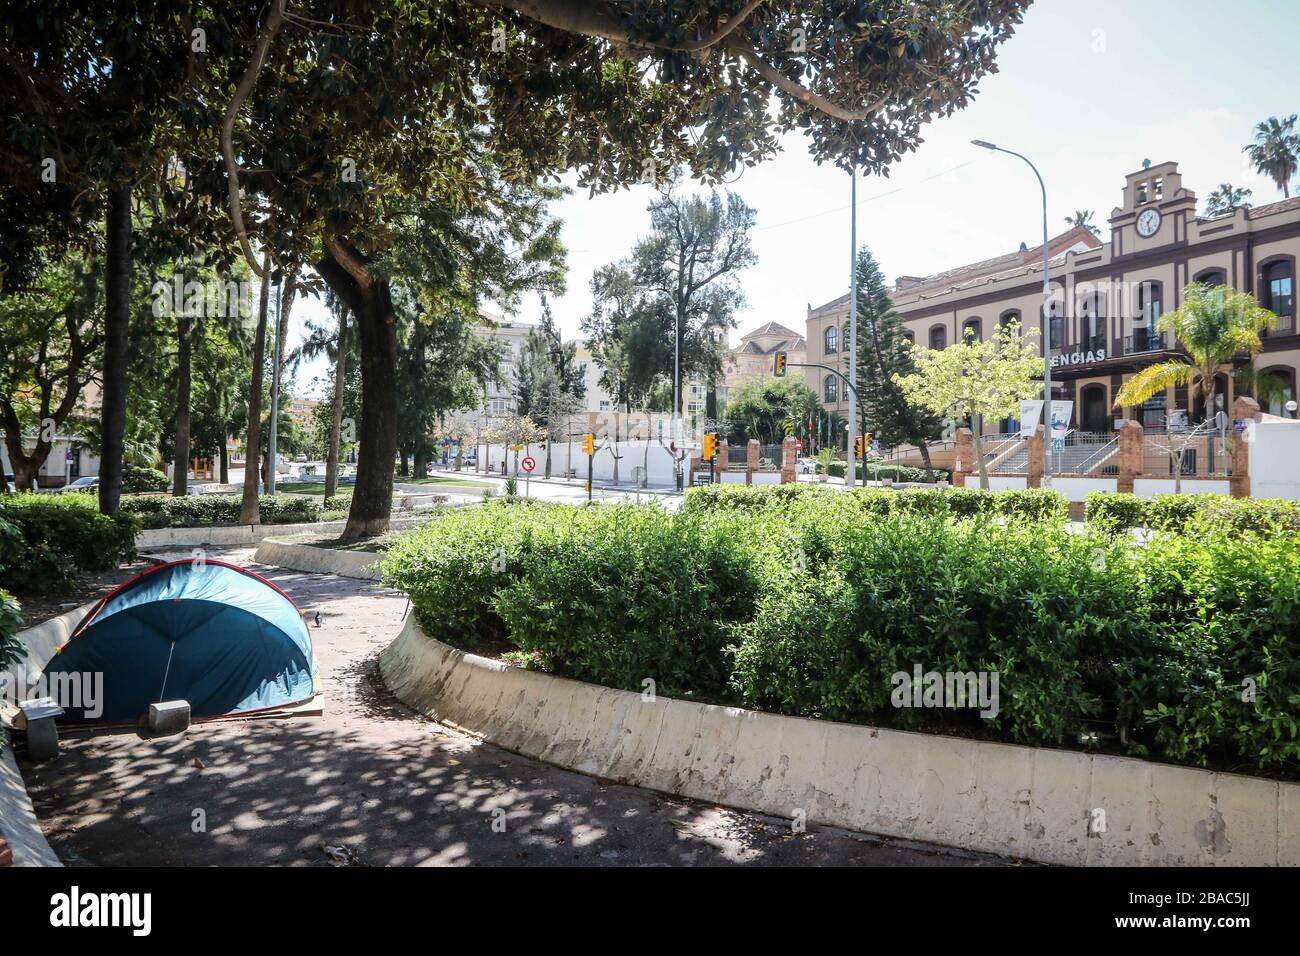 März 2020: 26. März 2020 (Málaga) beginnen Sie, Indingentes mit eigenen Zelten in der Nähe des Zivilkrankenhauses von Málaga zu campen, da sie aus ihren Häusern vertrieben wurden und aufgrund der Krise der Coronavirus Credit aus wirtschaftlichen Gründen nirgendwo hingehen können: Lorenzo Carnero/ZUMA Wire/Alamy Live News Stockfoto